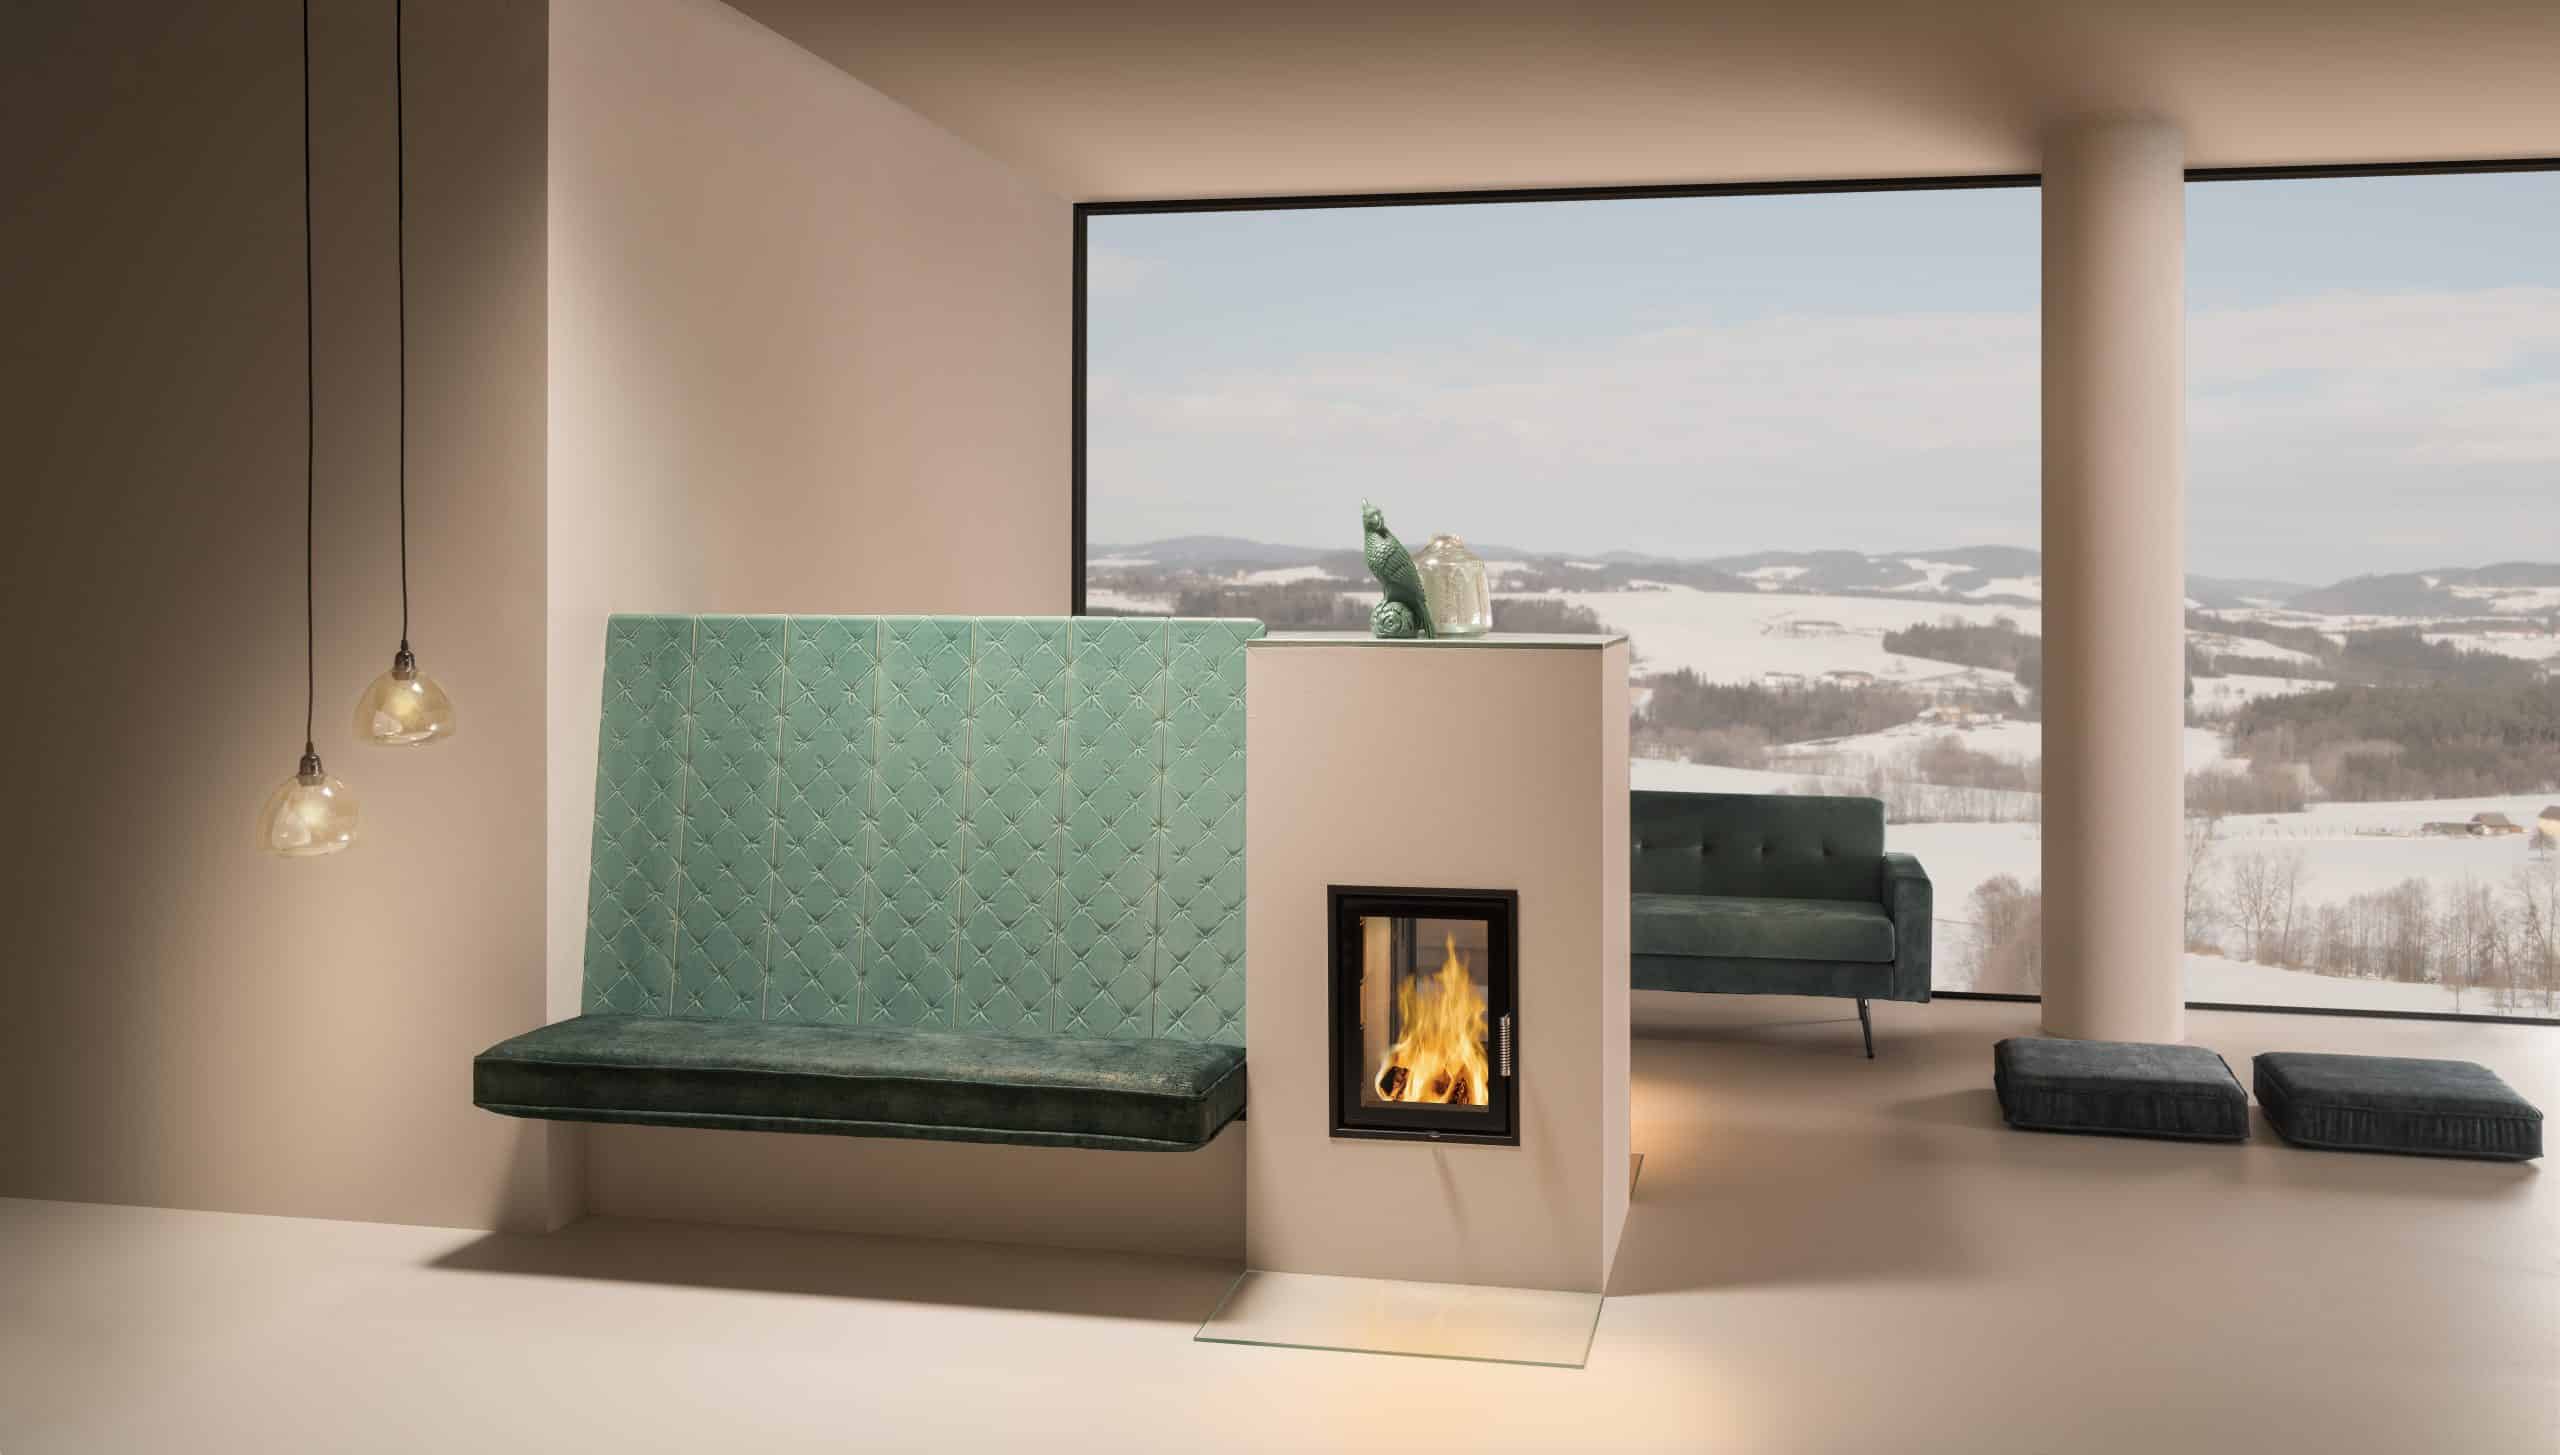 Sommerhuber präsentiert einen gemütlichen Kachelofen im trendingen Chesterfield-Design in Türkisgrün und großem Sichtfenster zur Feuerstelle.